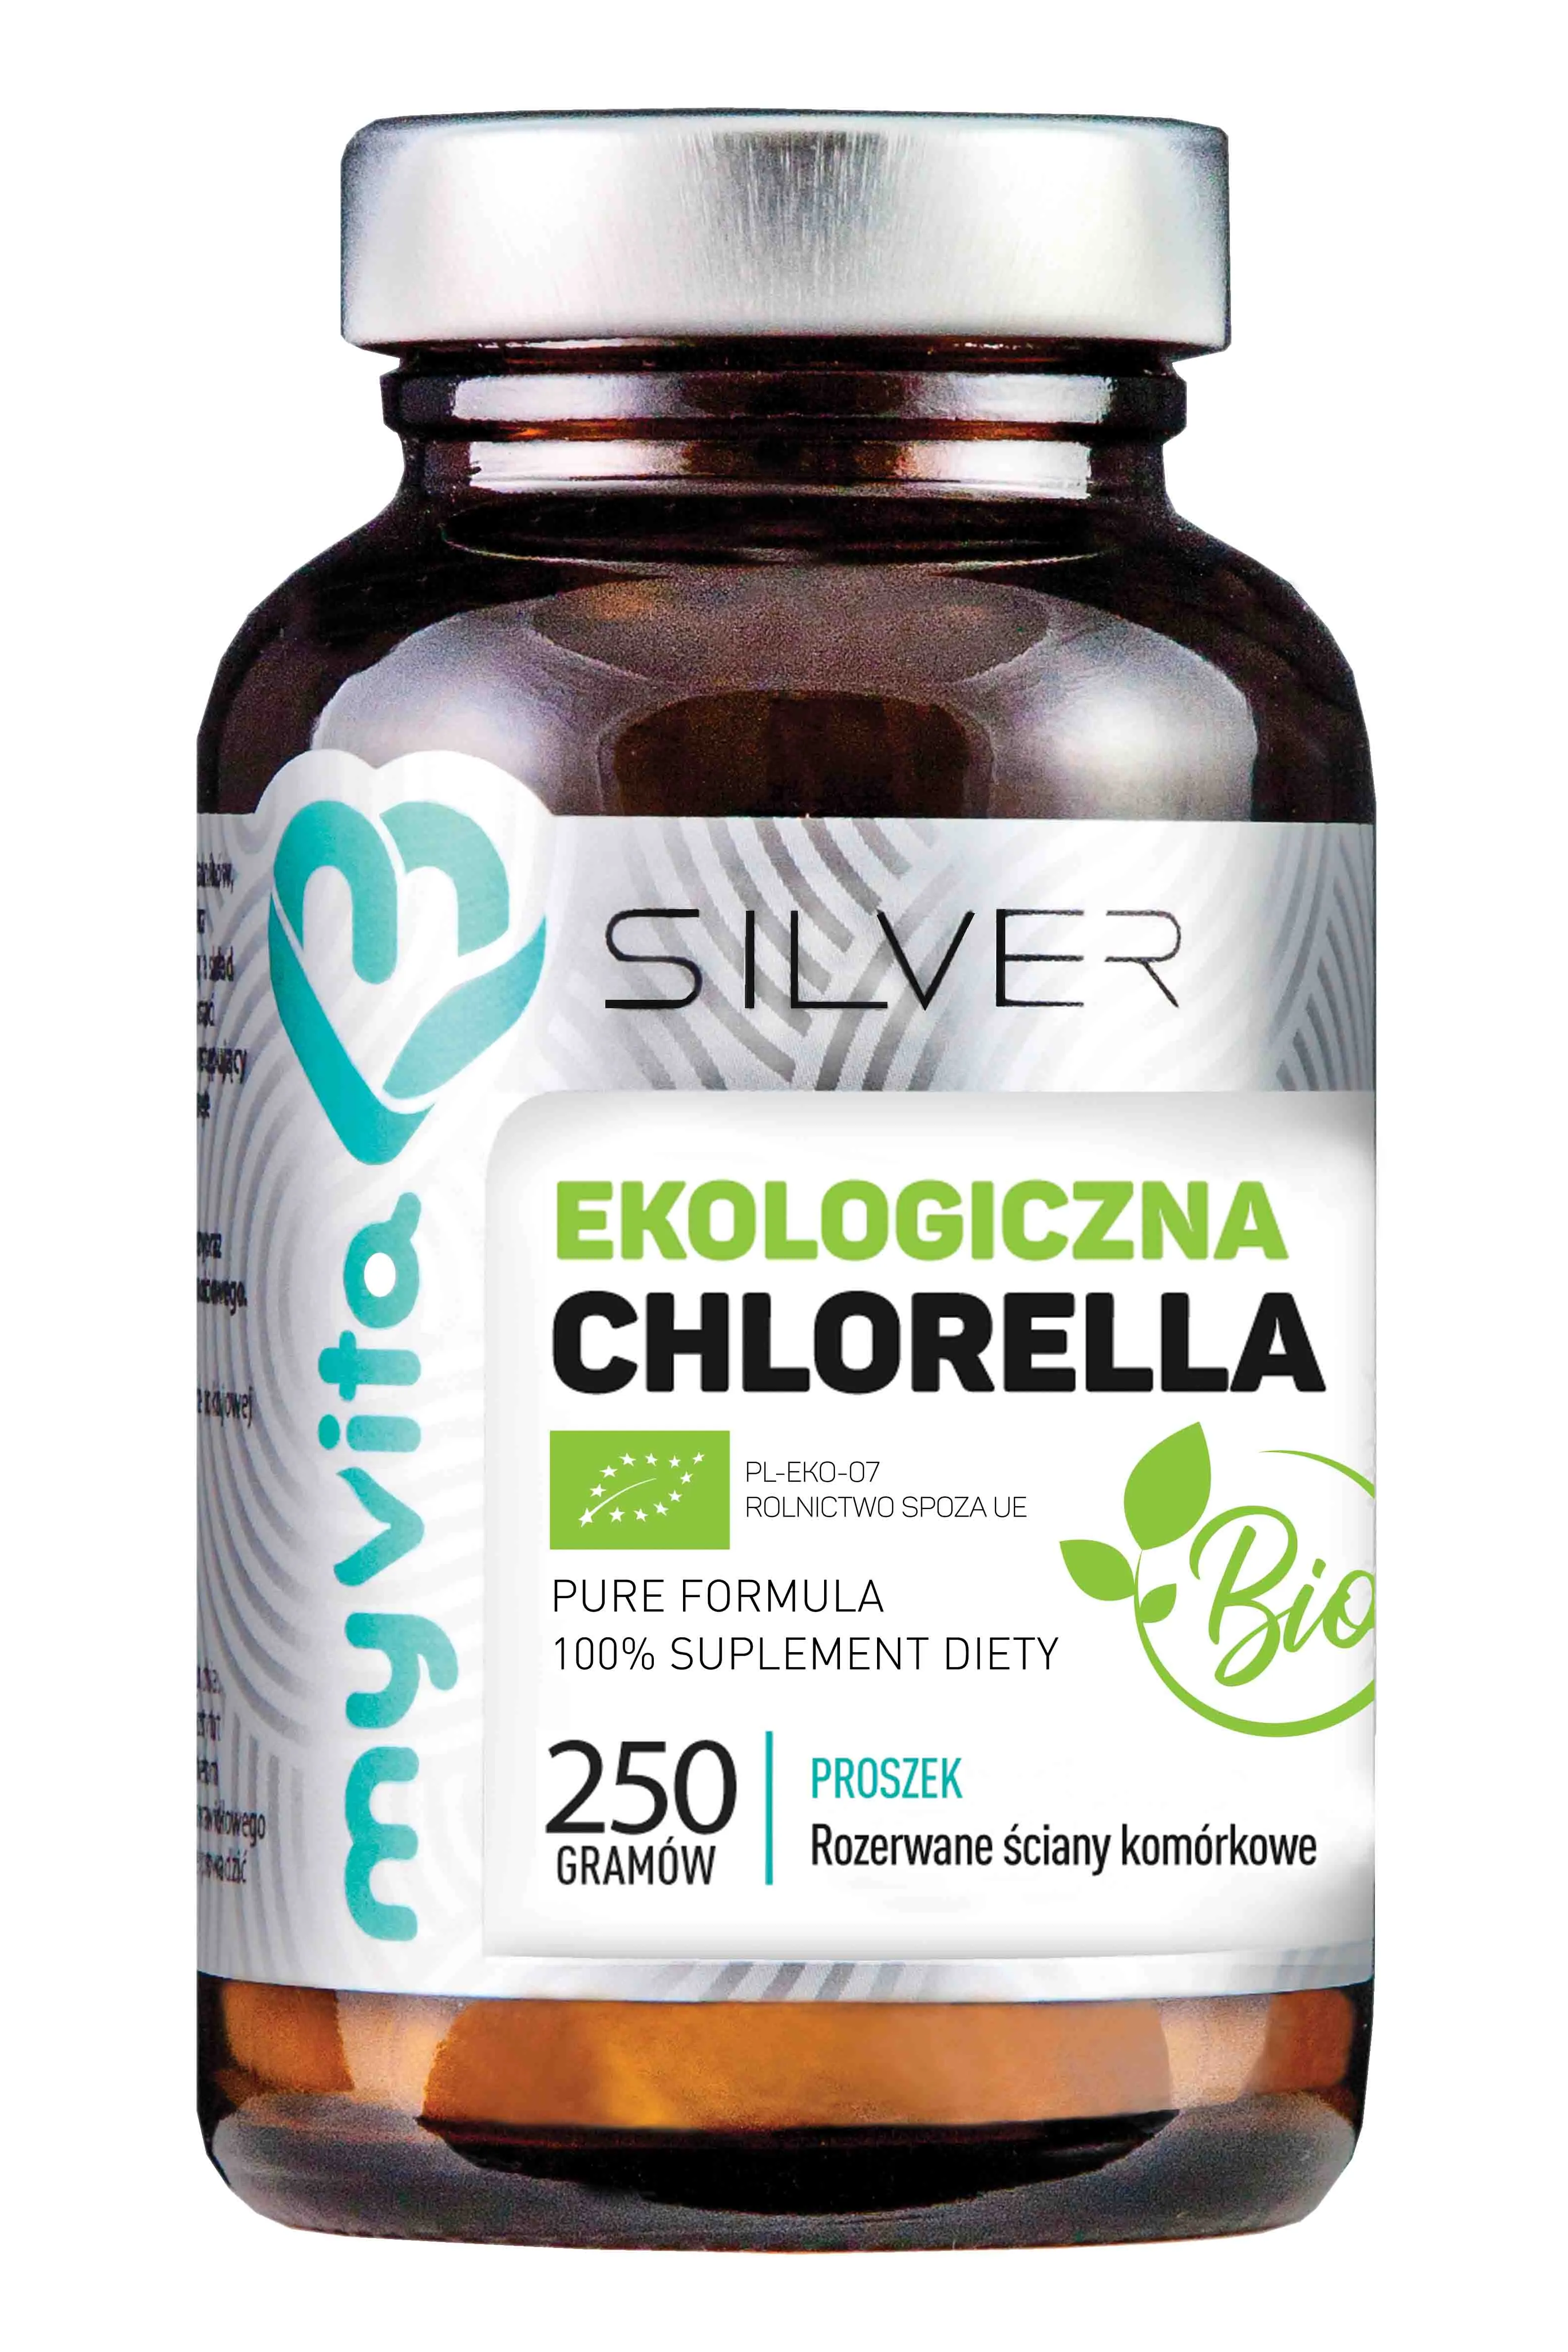 MyVita Silver, Chlorella Bio ekologiczna, suplement diety, proszek, 250g